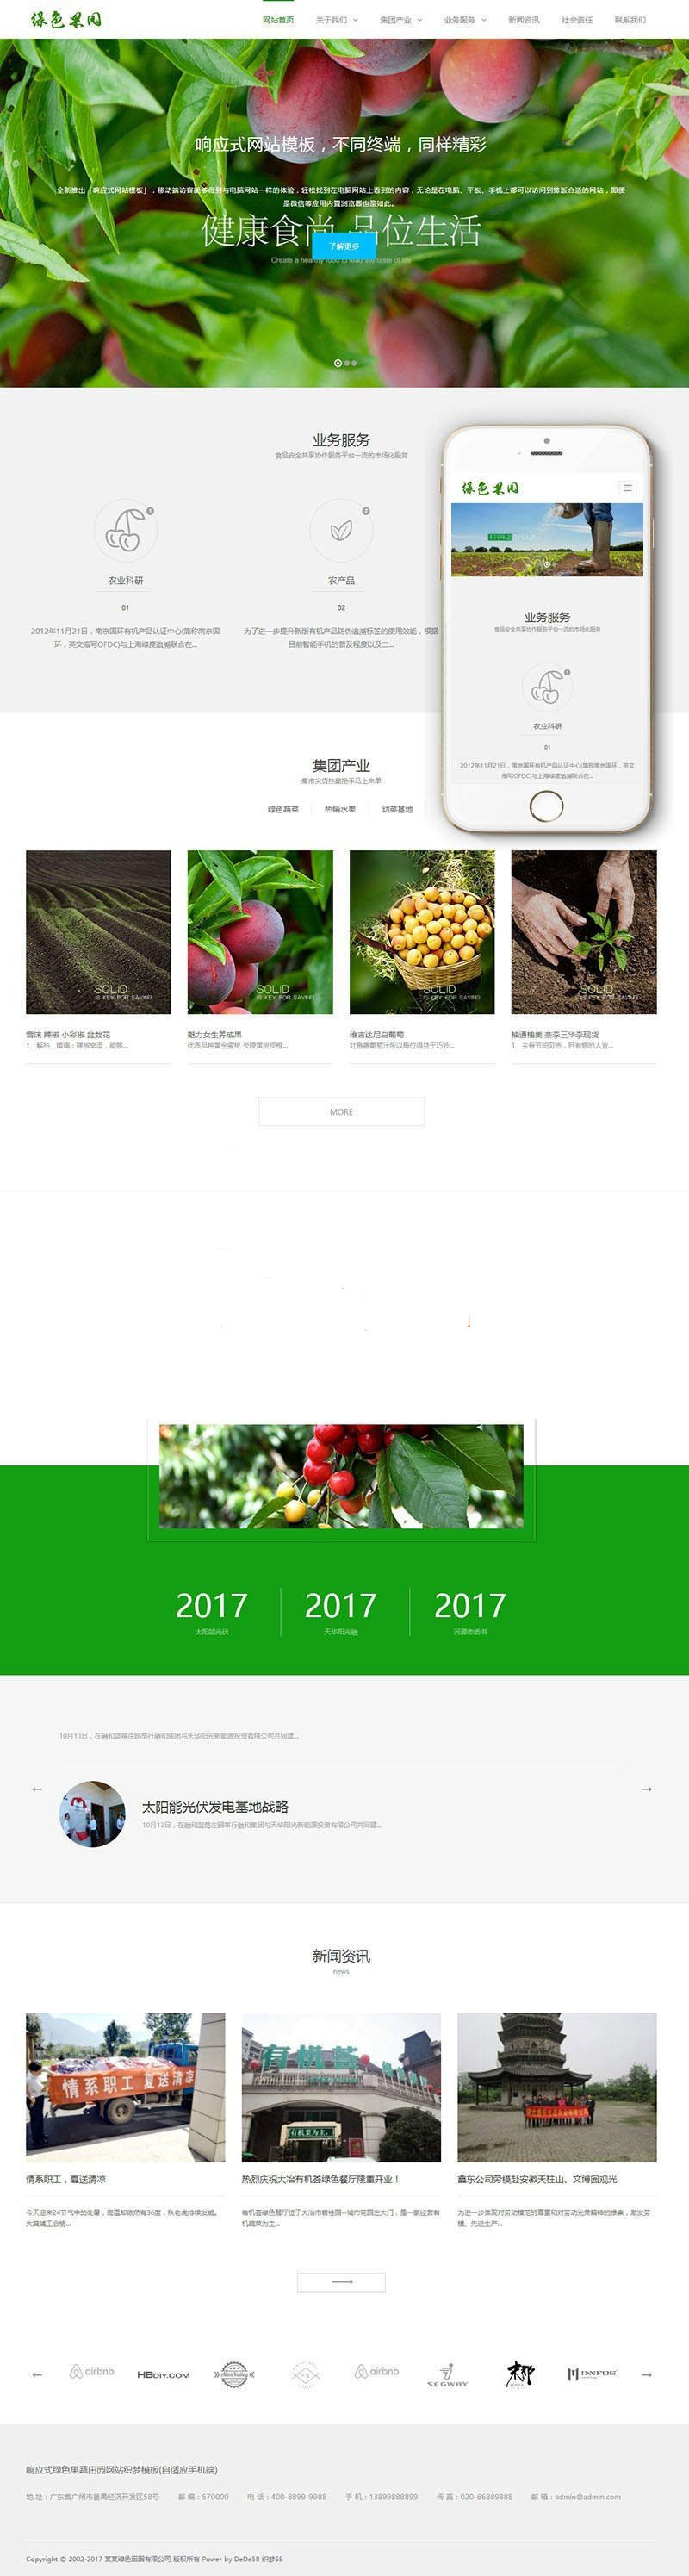 织梦dedecms响应式绿色水果蔬菜农业公司网站模板(自适应手机移动端)插图源码资源库